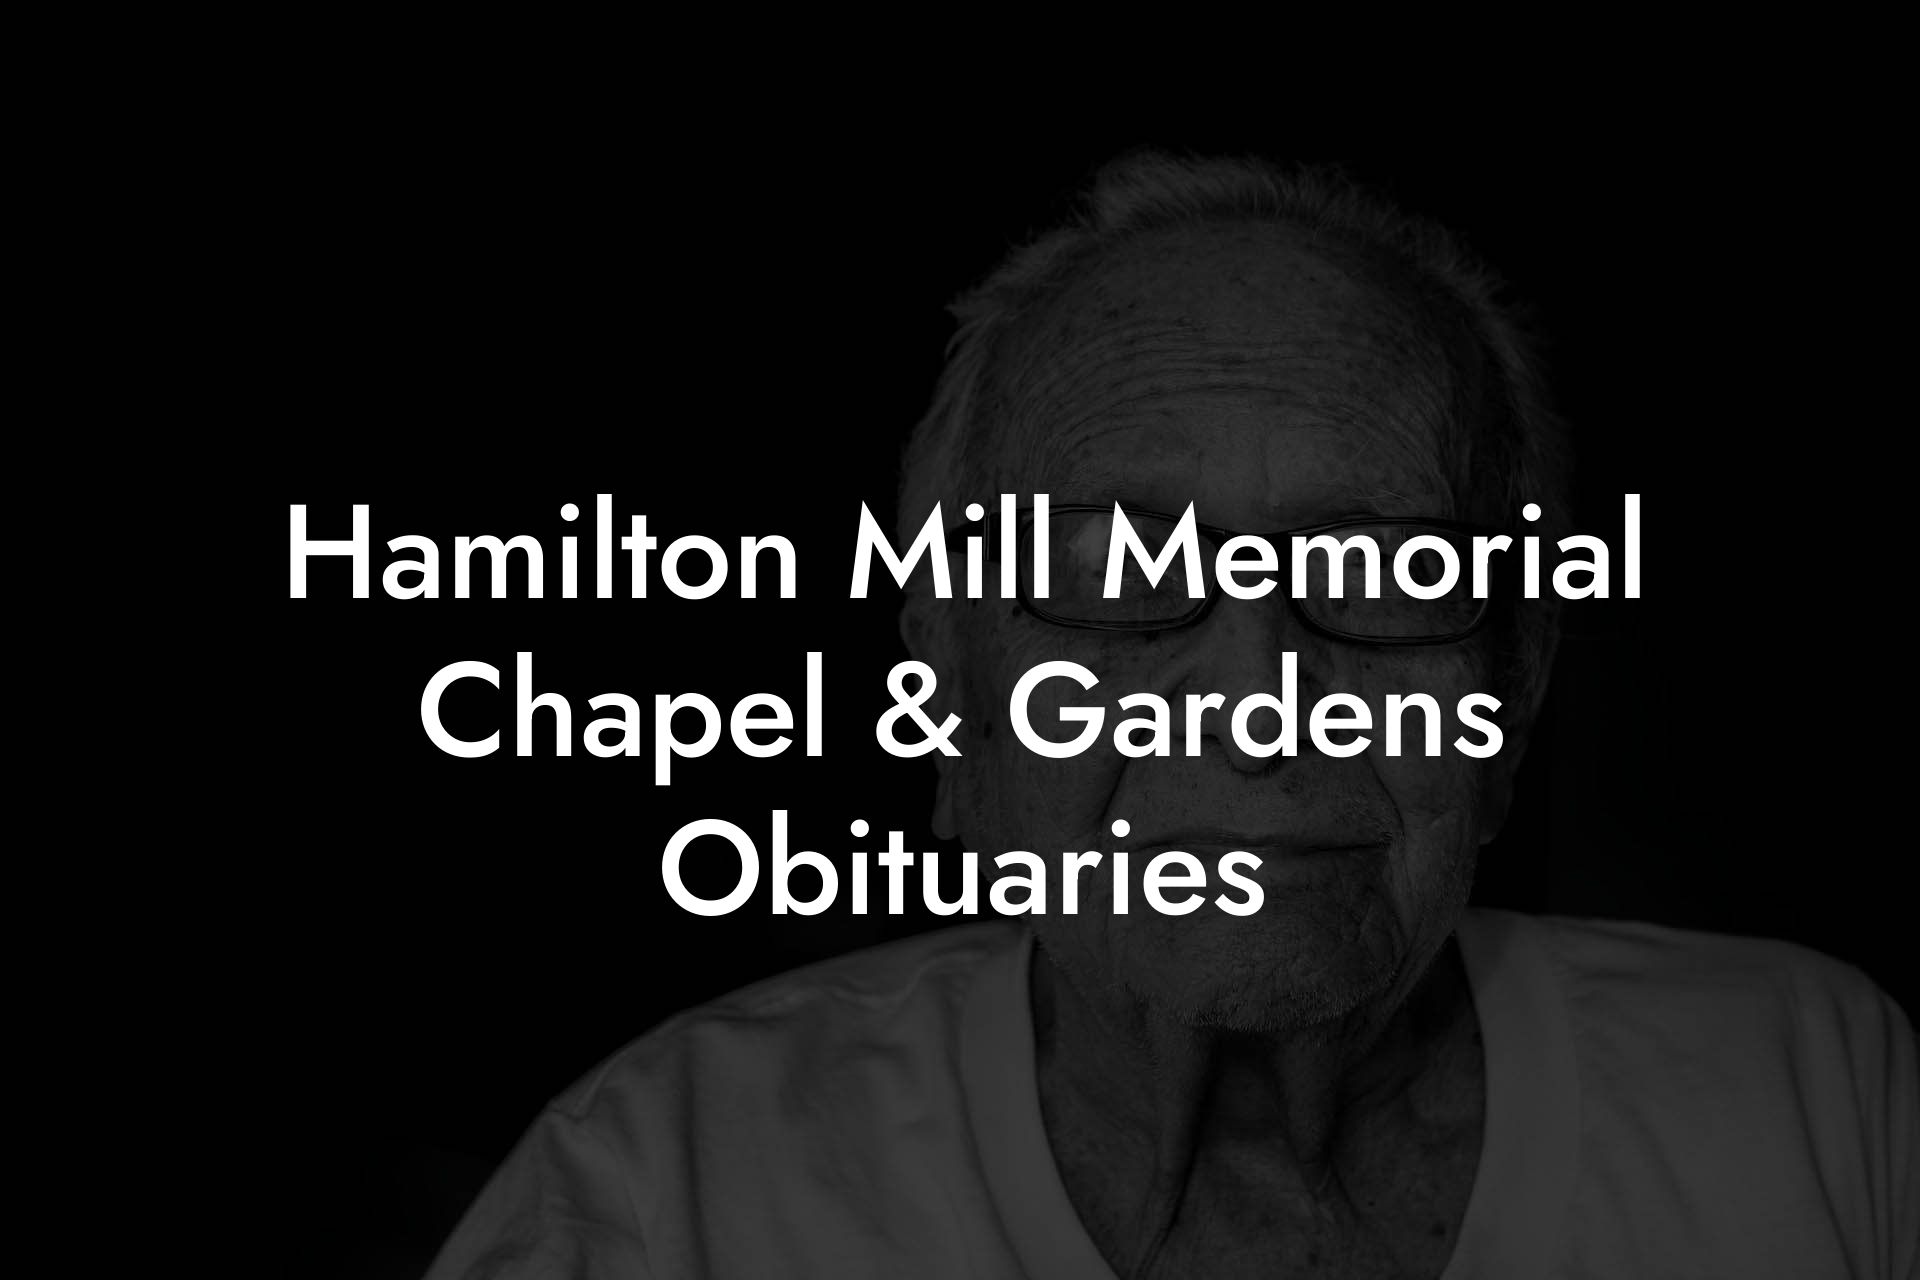 Hamilton Mill Memorial Chapel & Gardens Obituaries